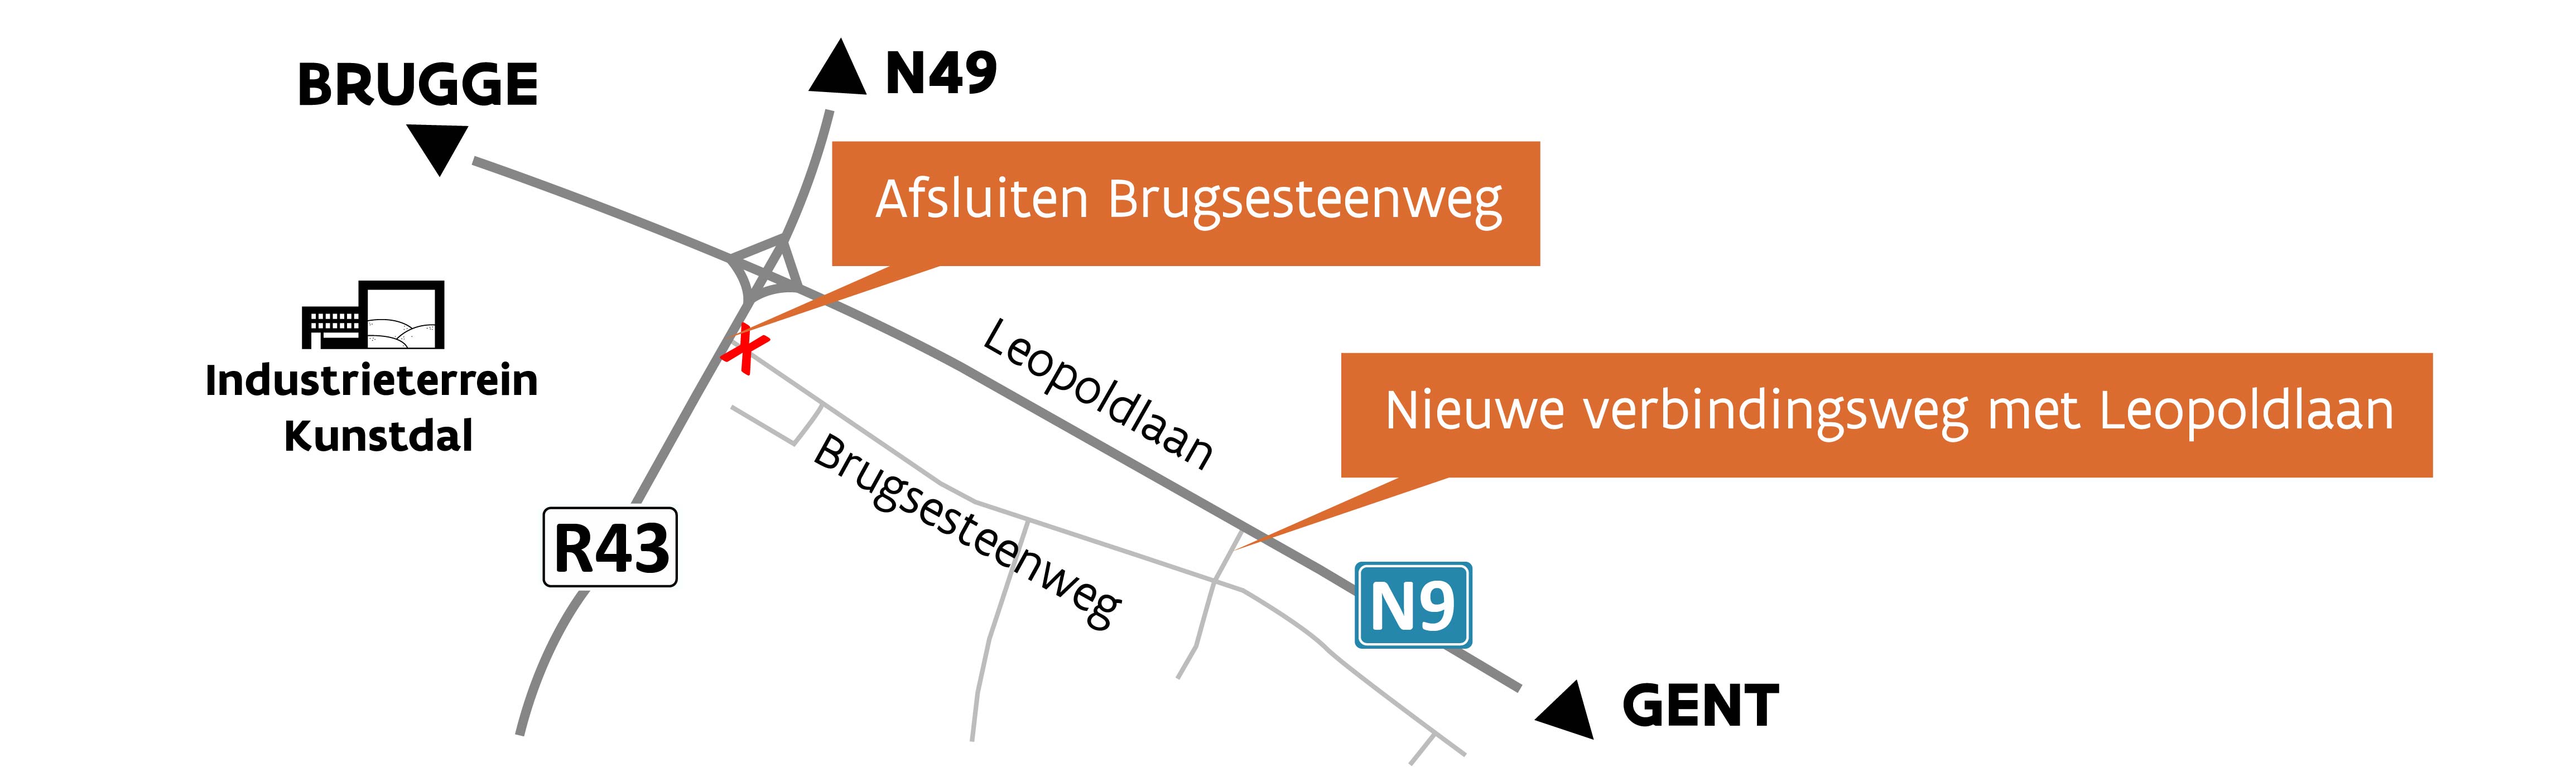 Nieuwe verbindingsweg - N9 Leopoldlaan 